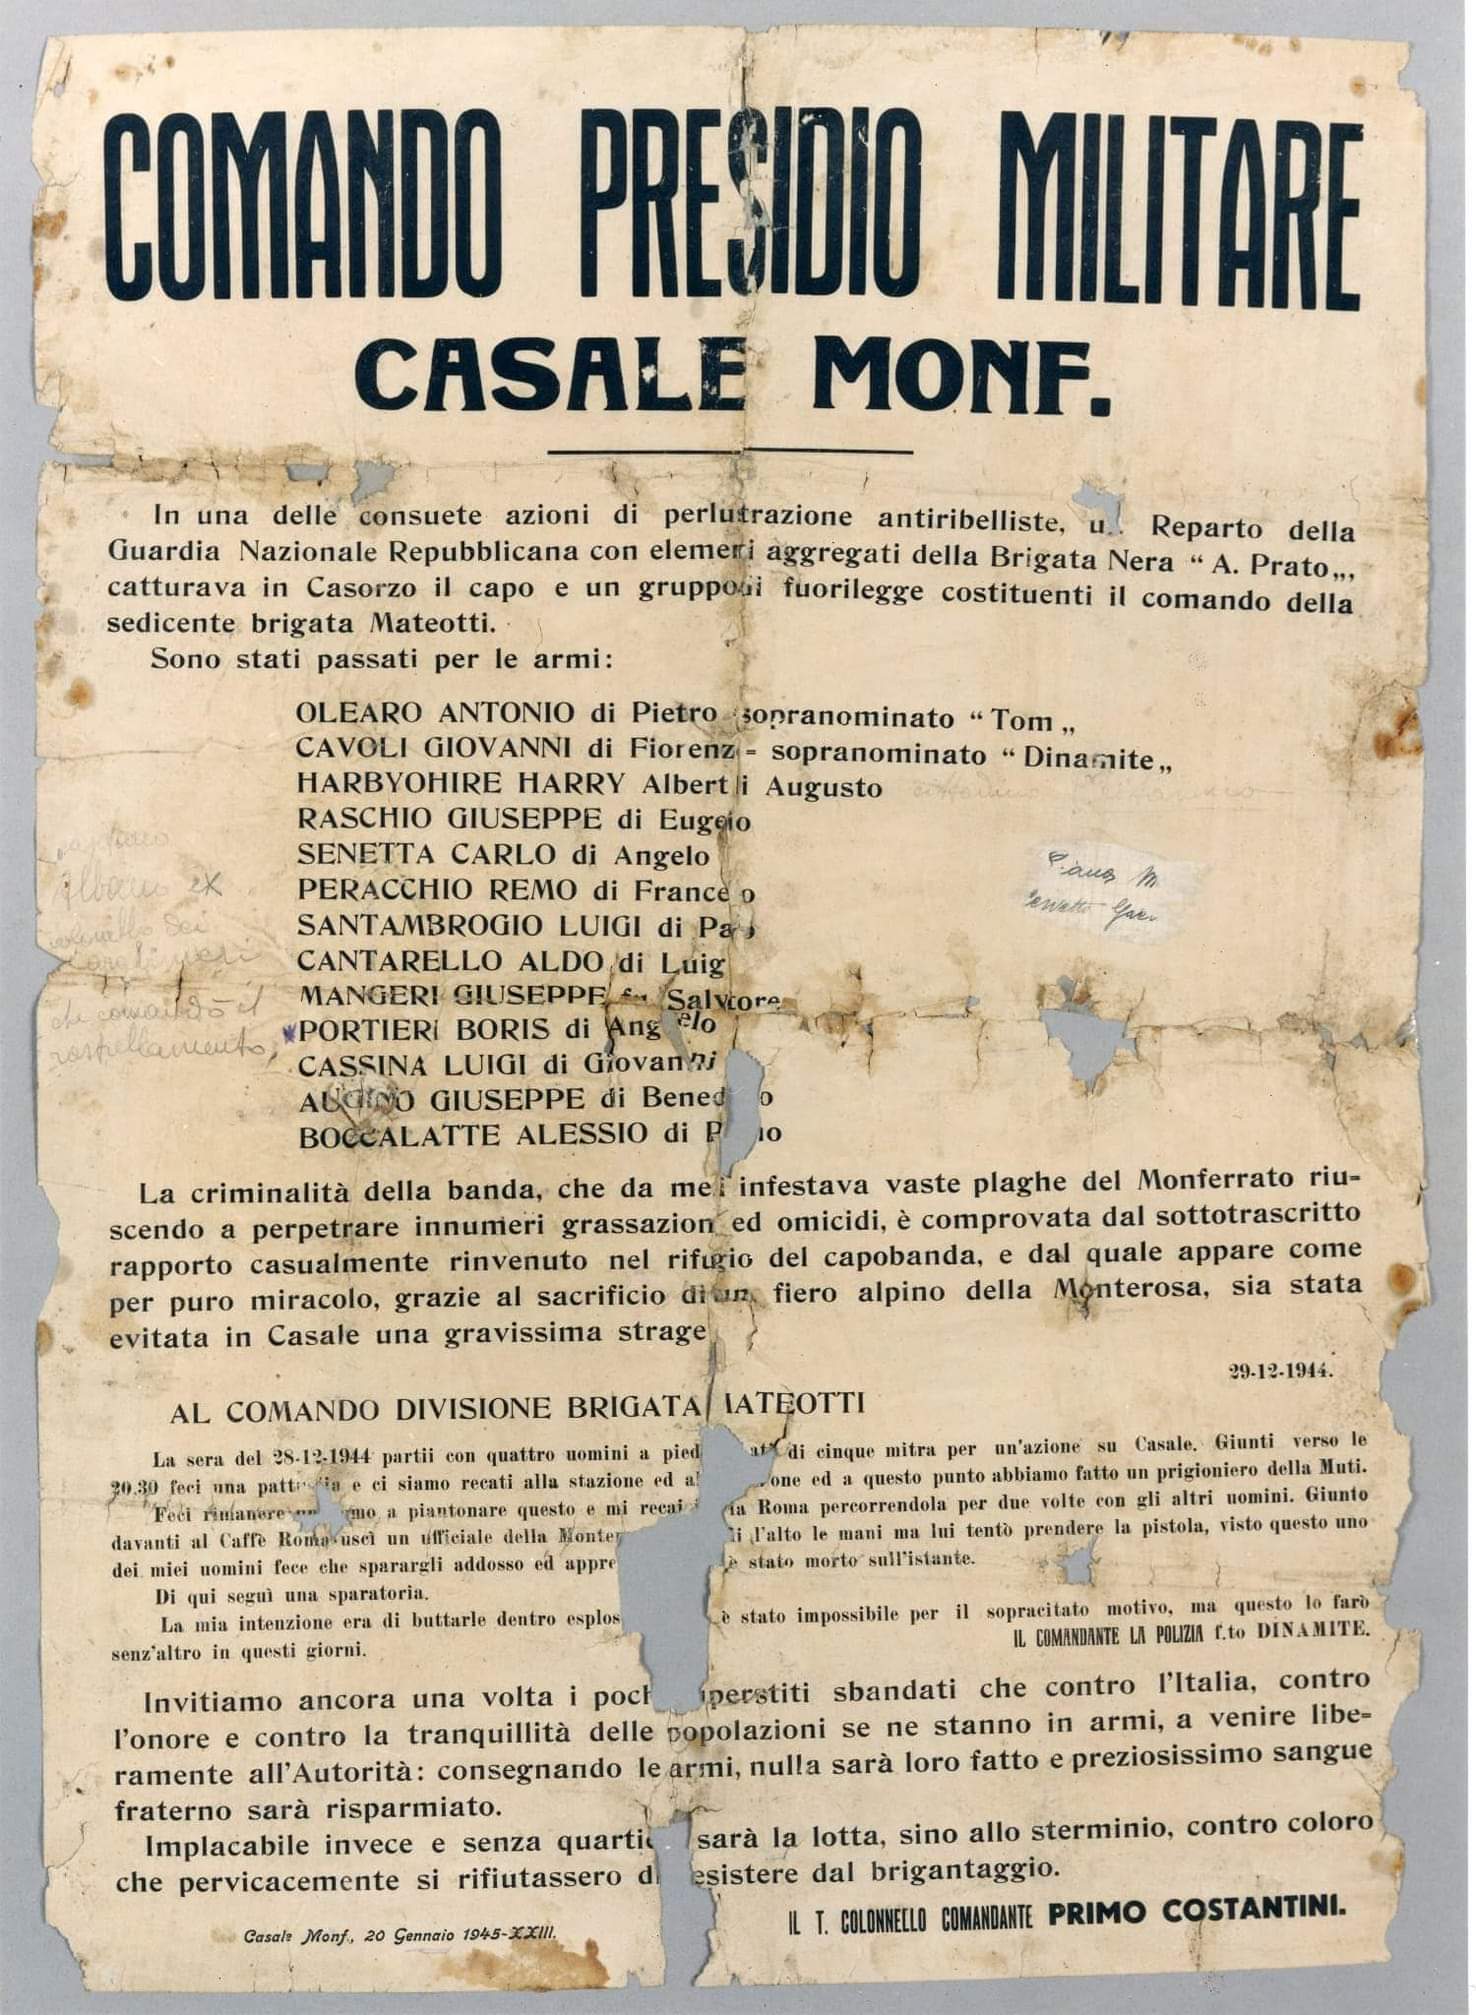 Casale Monferrato, Codice rosso rafforzato – CorriereAl